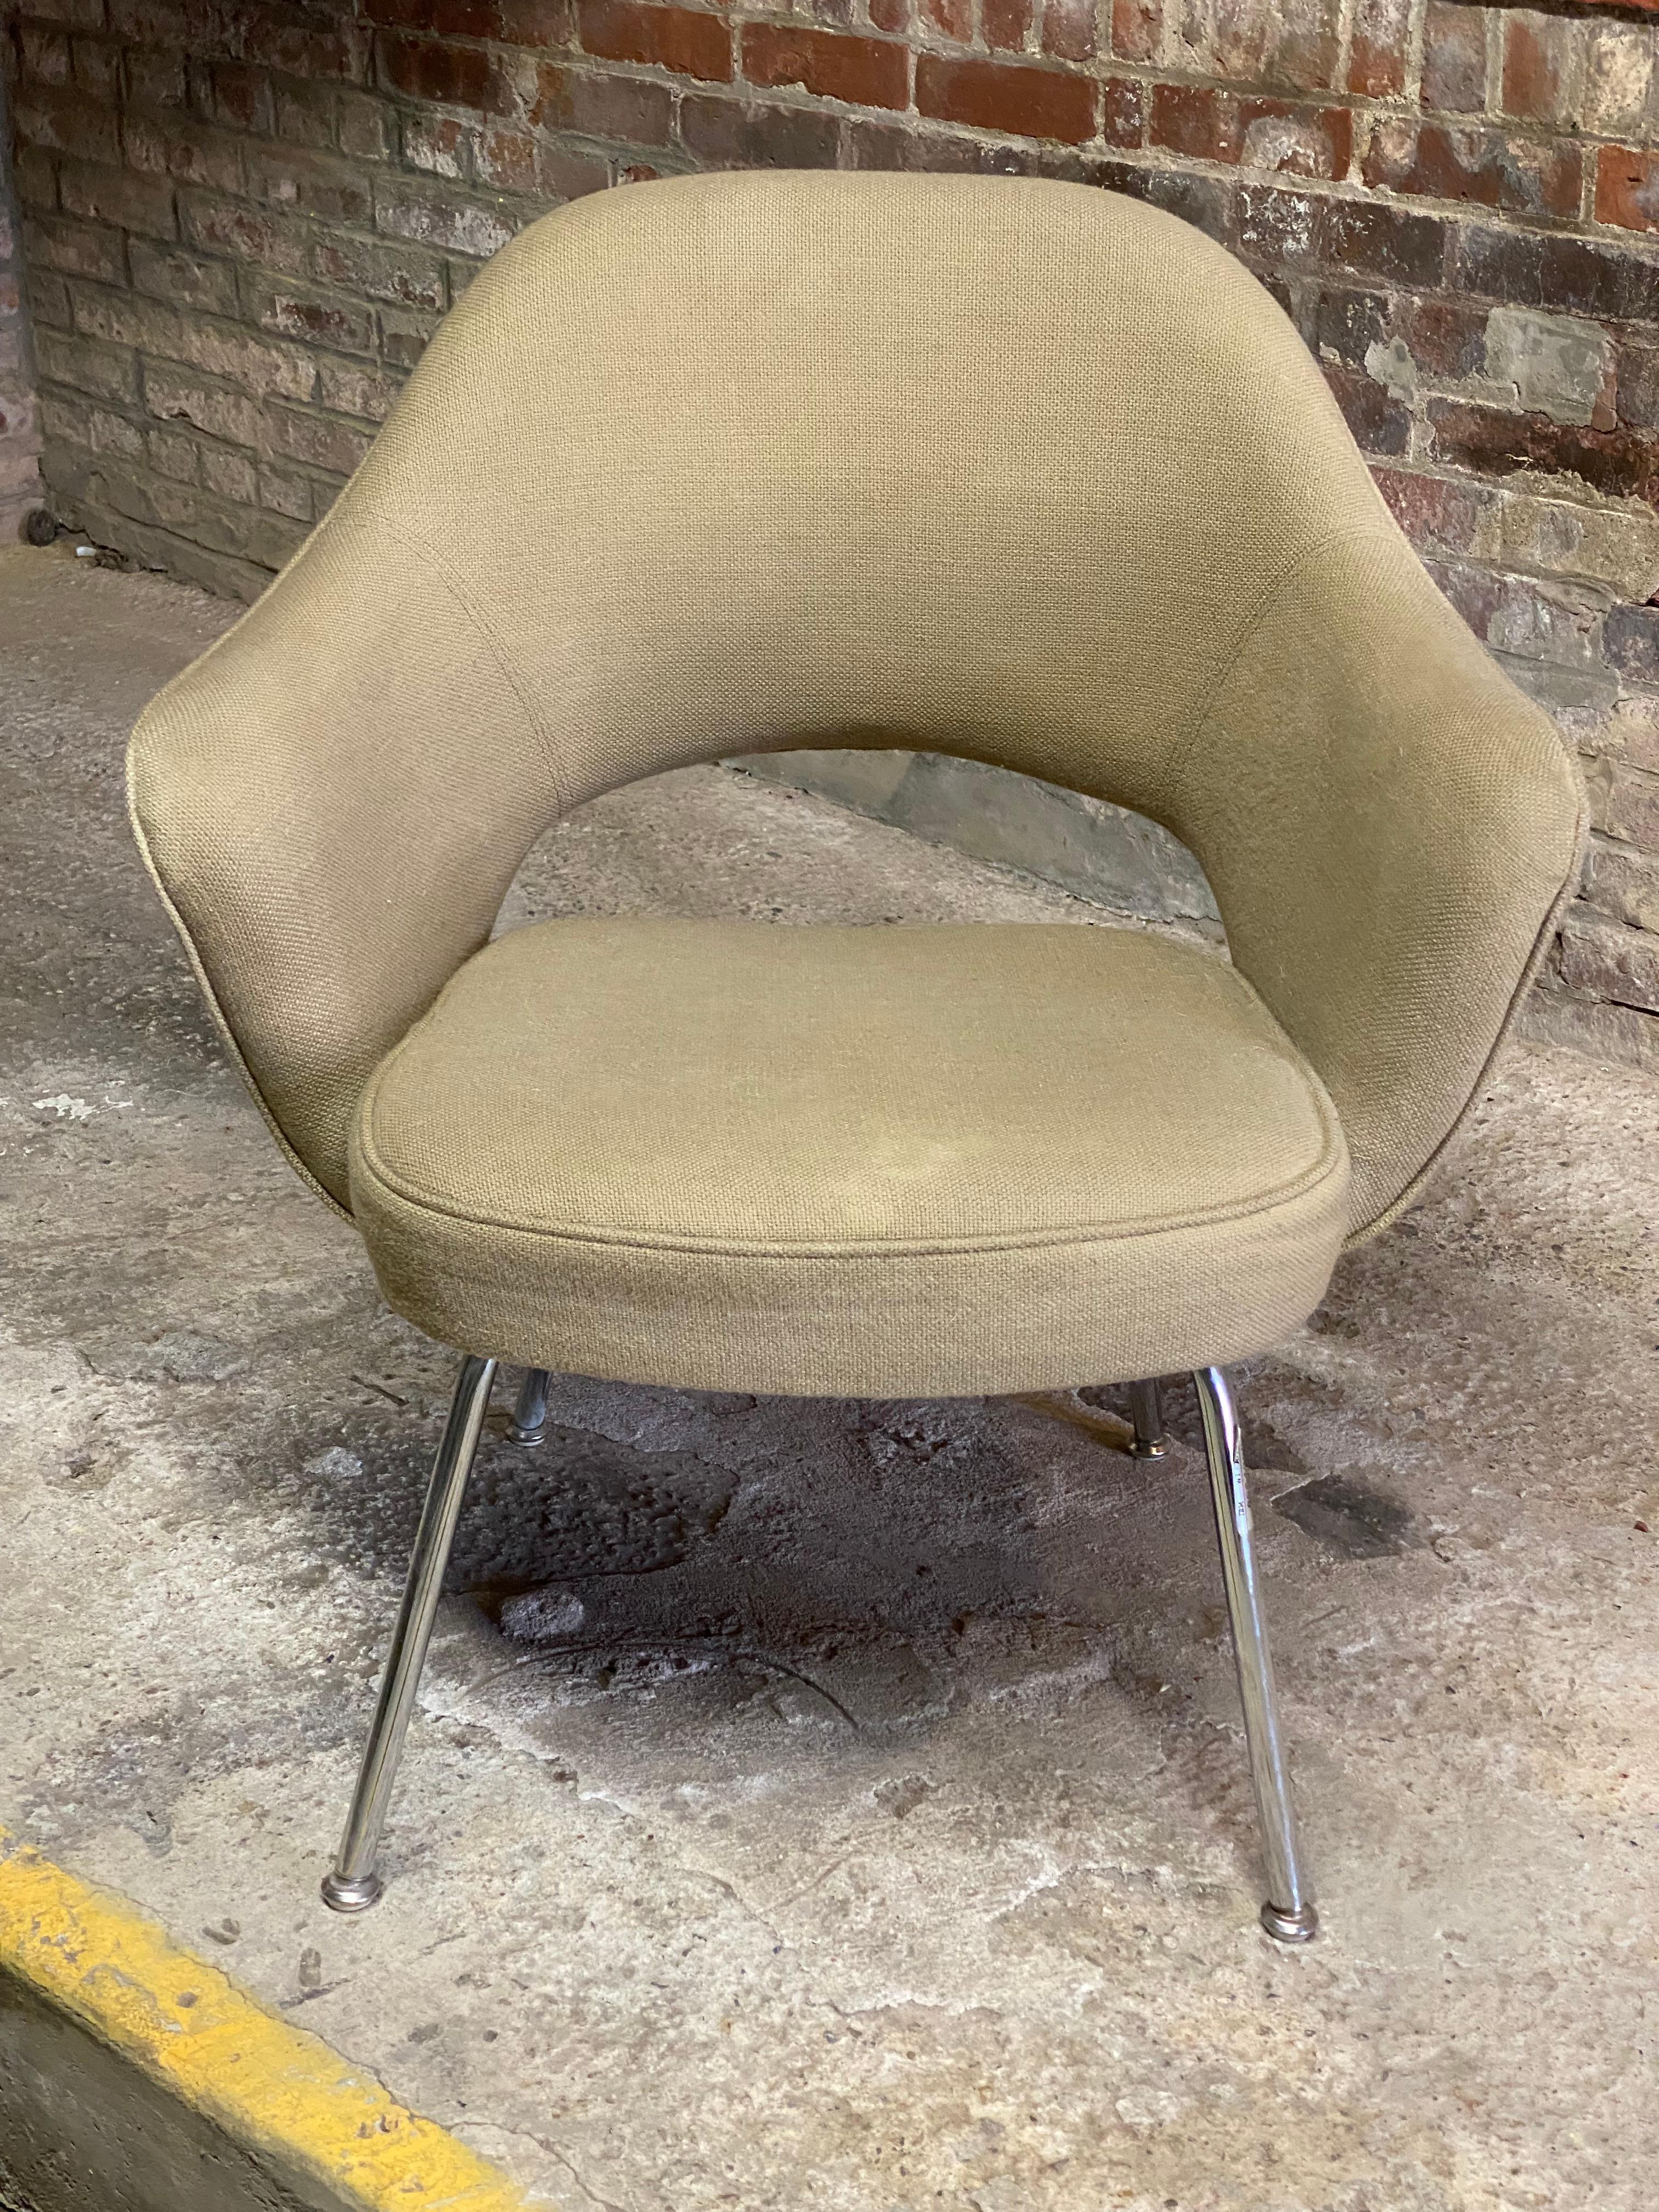 Ein schönes Beispiel für einen Eero Saarinen Model 71 Executive Sessel von Knoll International. Dieser besondere Stuhl kam direkt aus den IBM-Büros in Poughkeepsie, New York. Circa 1970. Signiert auf der Unterseite mit dem Label von Knoll